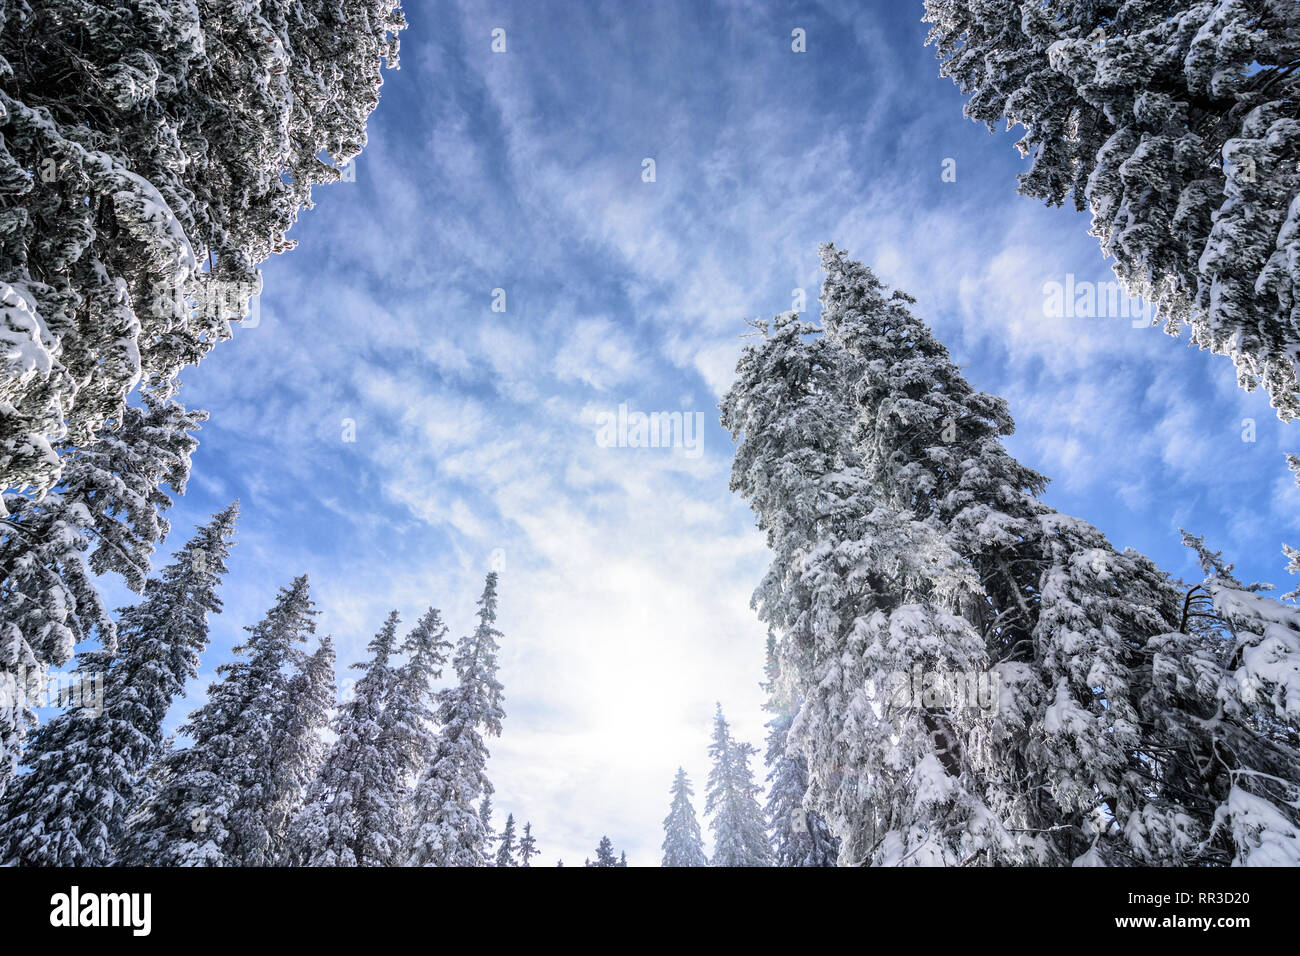 Puchberg am Schneeberg: snow covered spruce, conifer in Wiener Alpen, Alps, Niederösterreich, Lower Austria, Austria Stock Photo